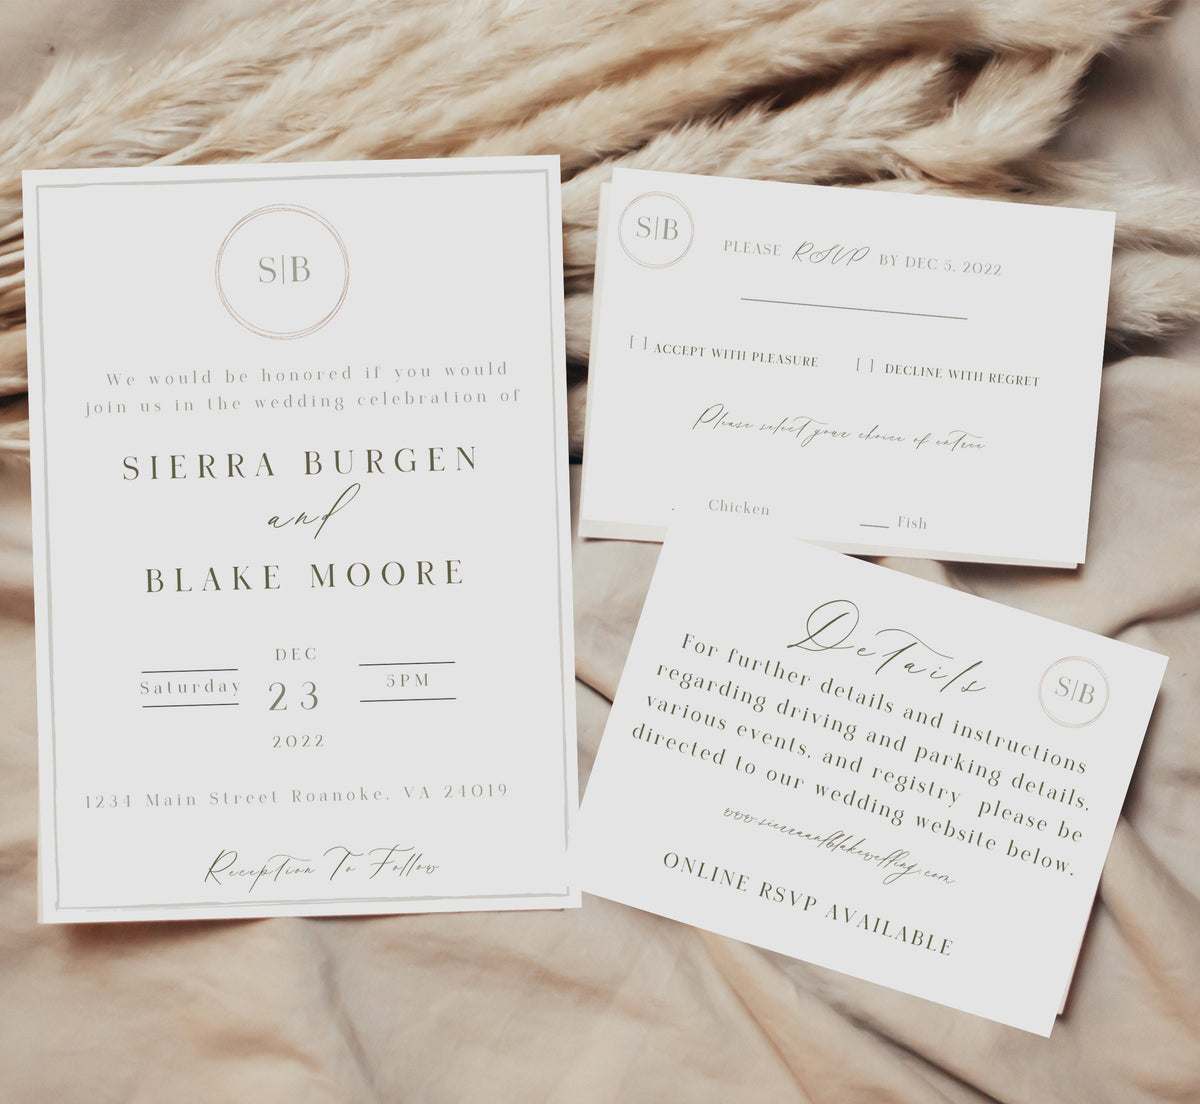 Sierra - Minimalist Wedding Invitation Suite Template, Wedding Invitation Set, Editable Modern Wedding Invite, Instant Download